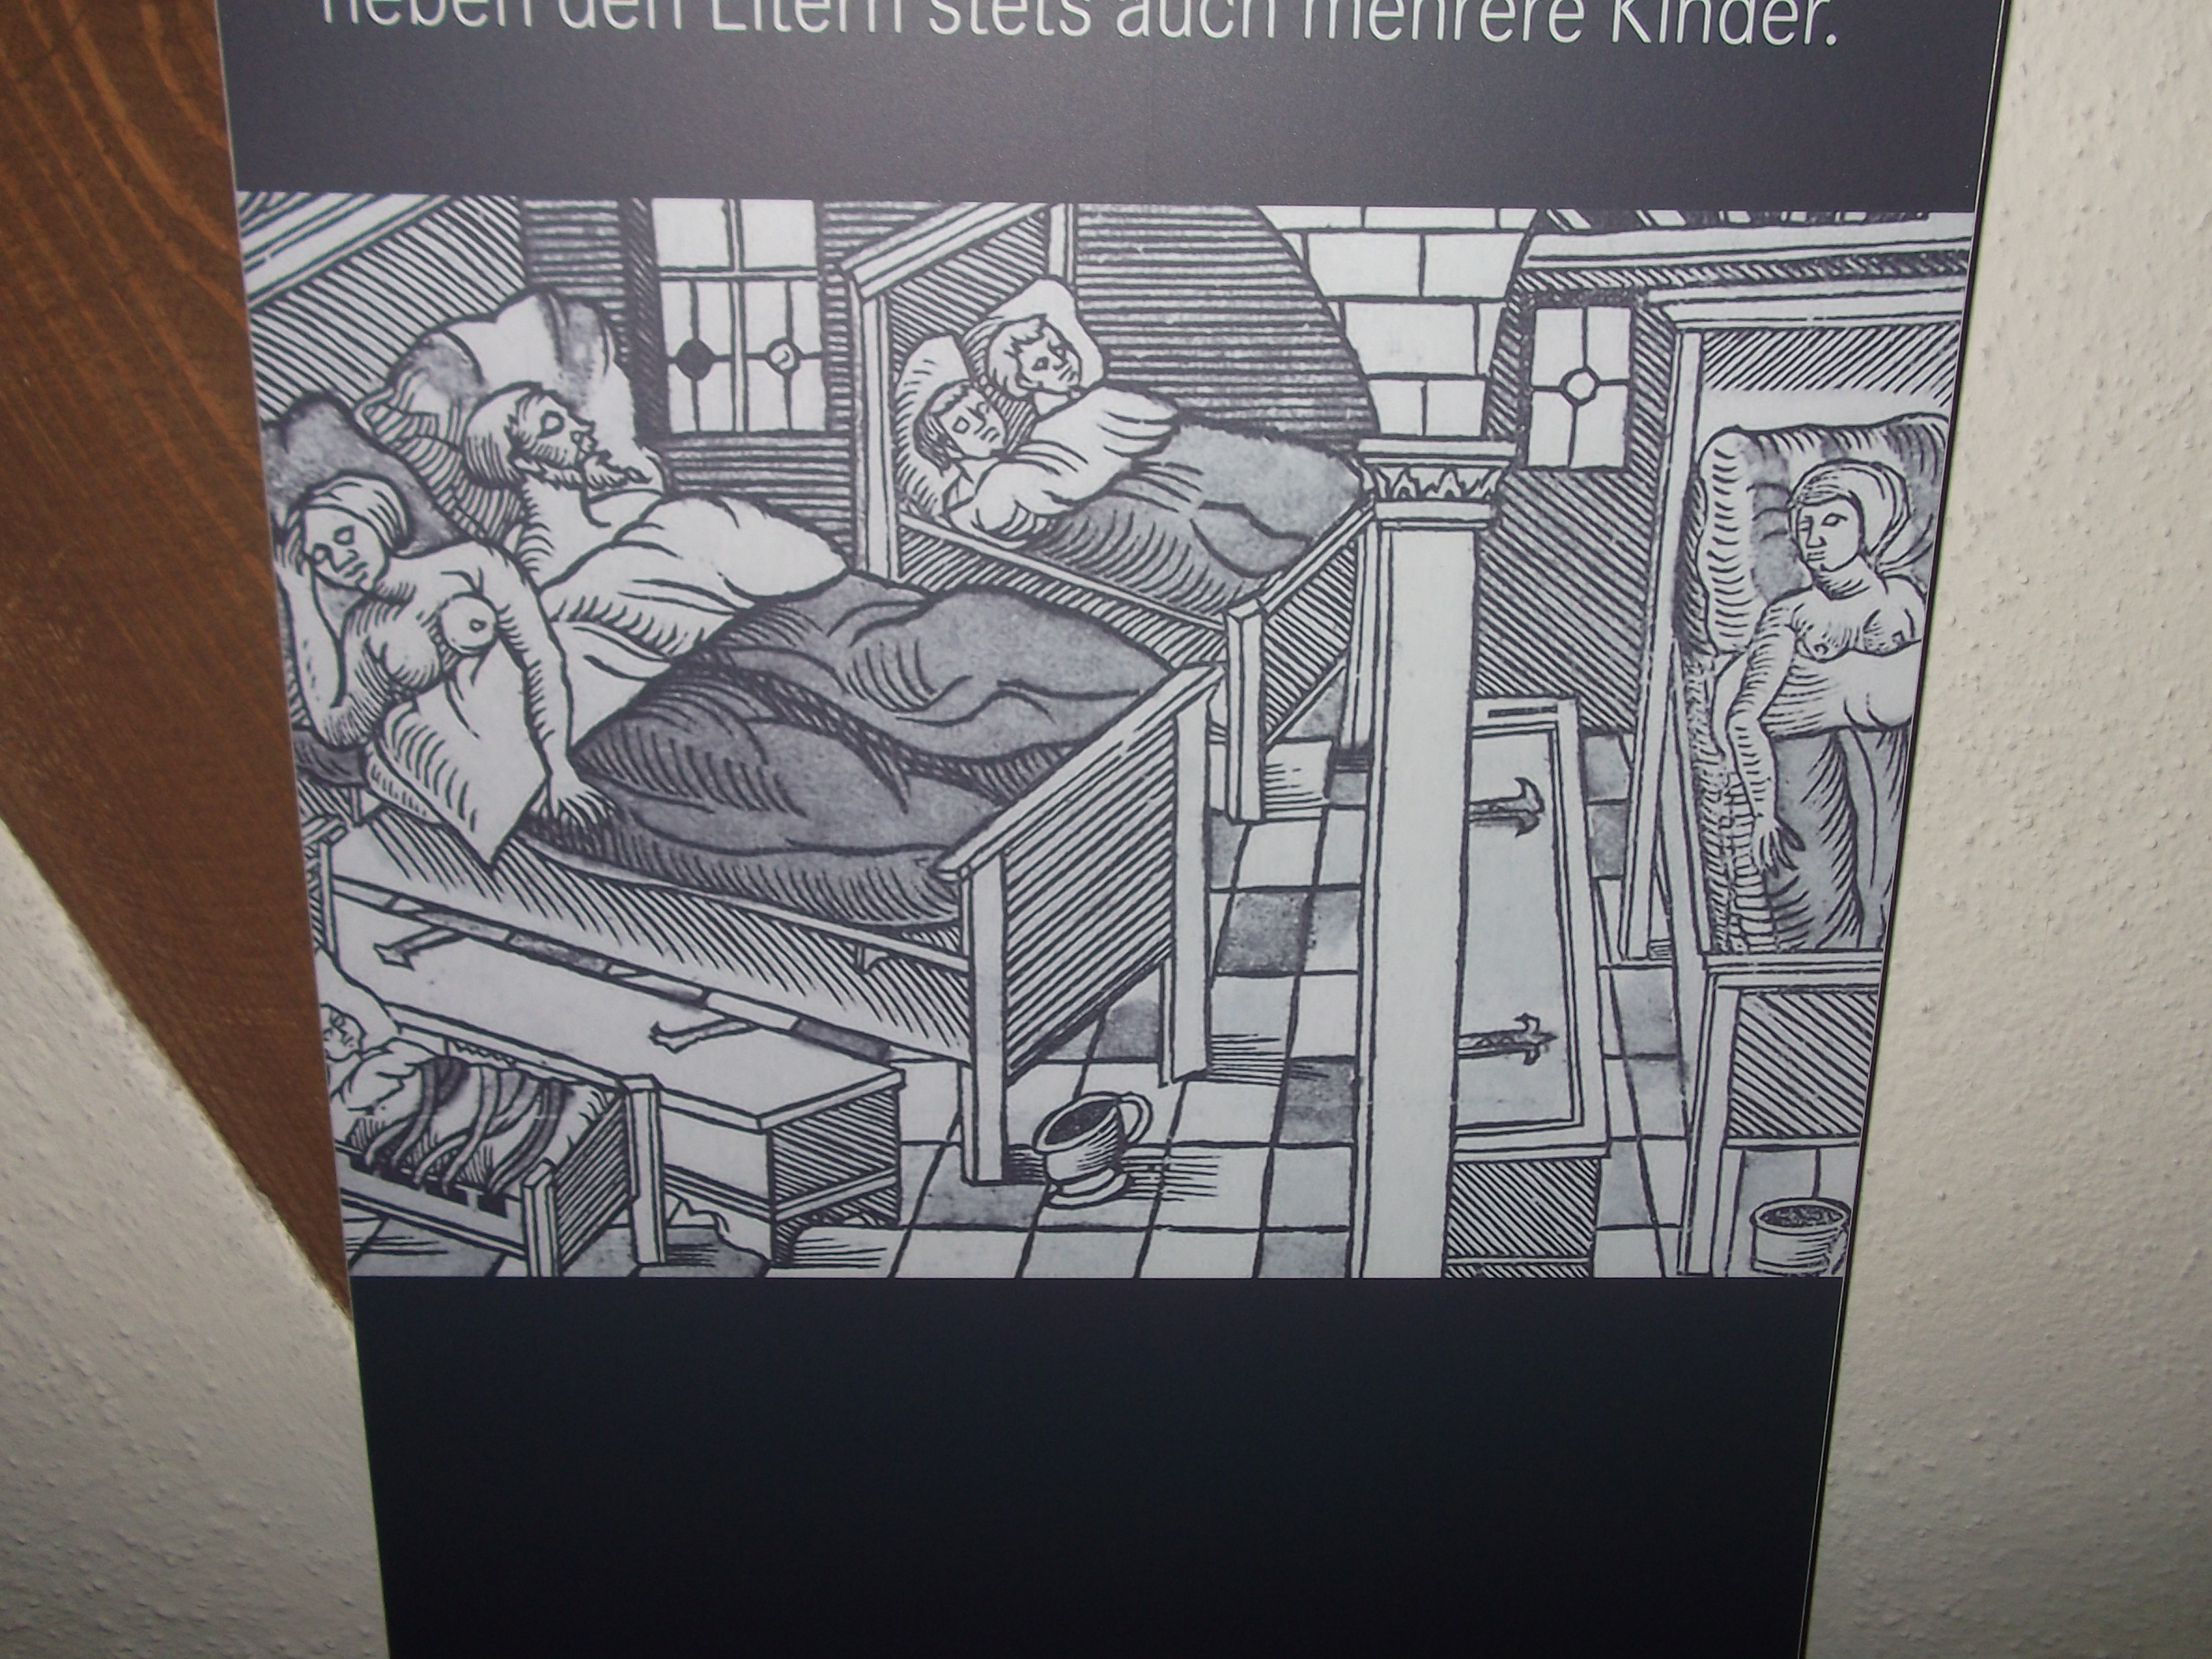 Ein Schlafzimmer Anno Dazumal, h&auml;ufig so wie auf dem Bild, war es der Schlafplatz der ganzen Familie